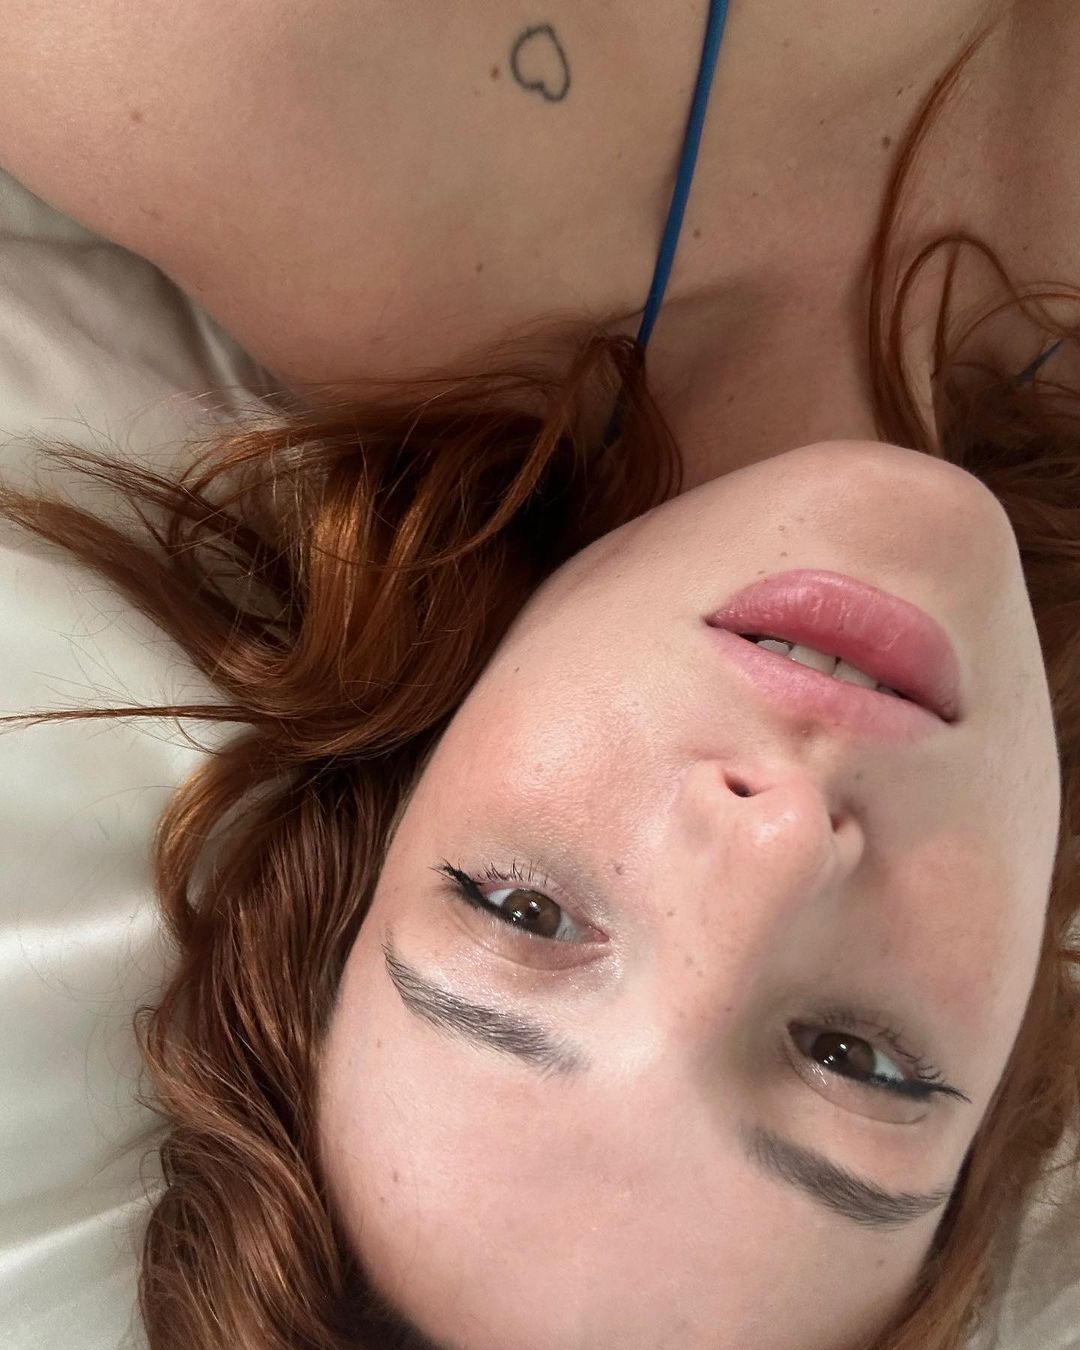 Photos n°1 : Bella Thorne’s Bedroom Selfies!